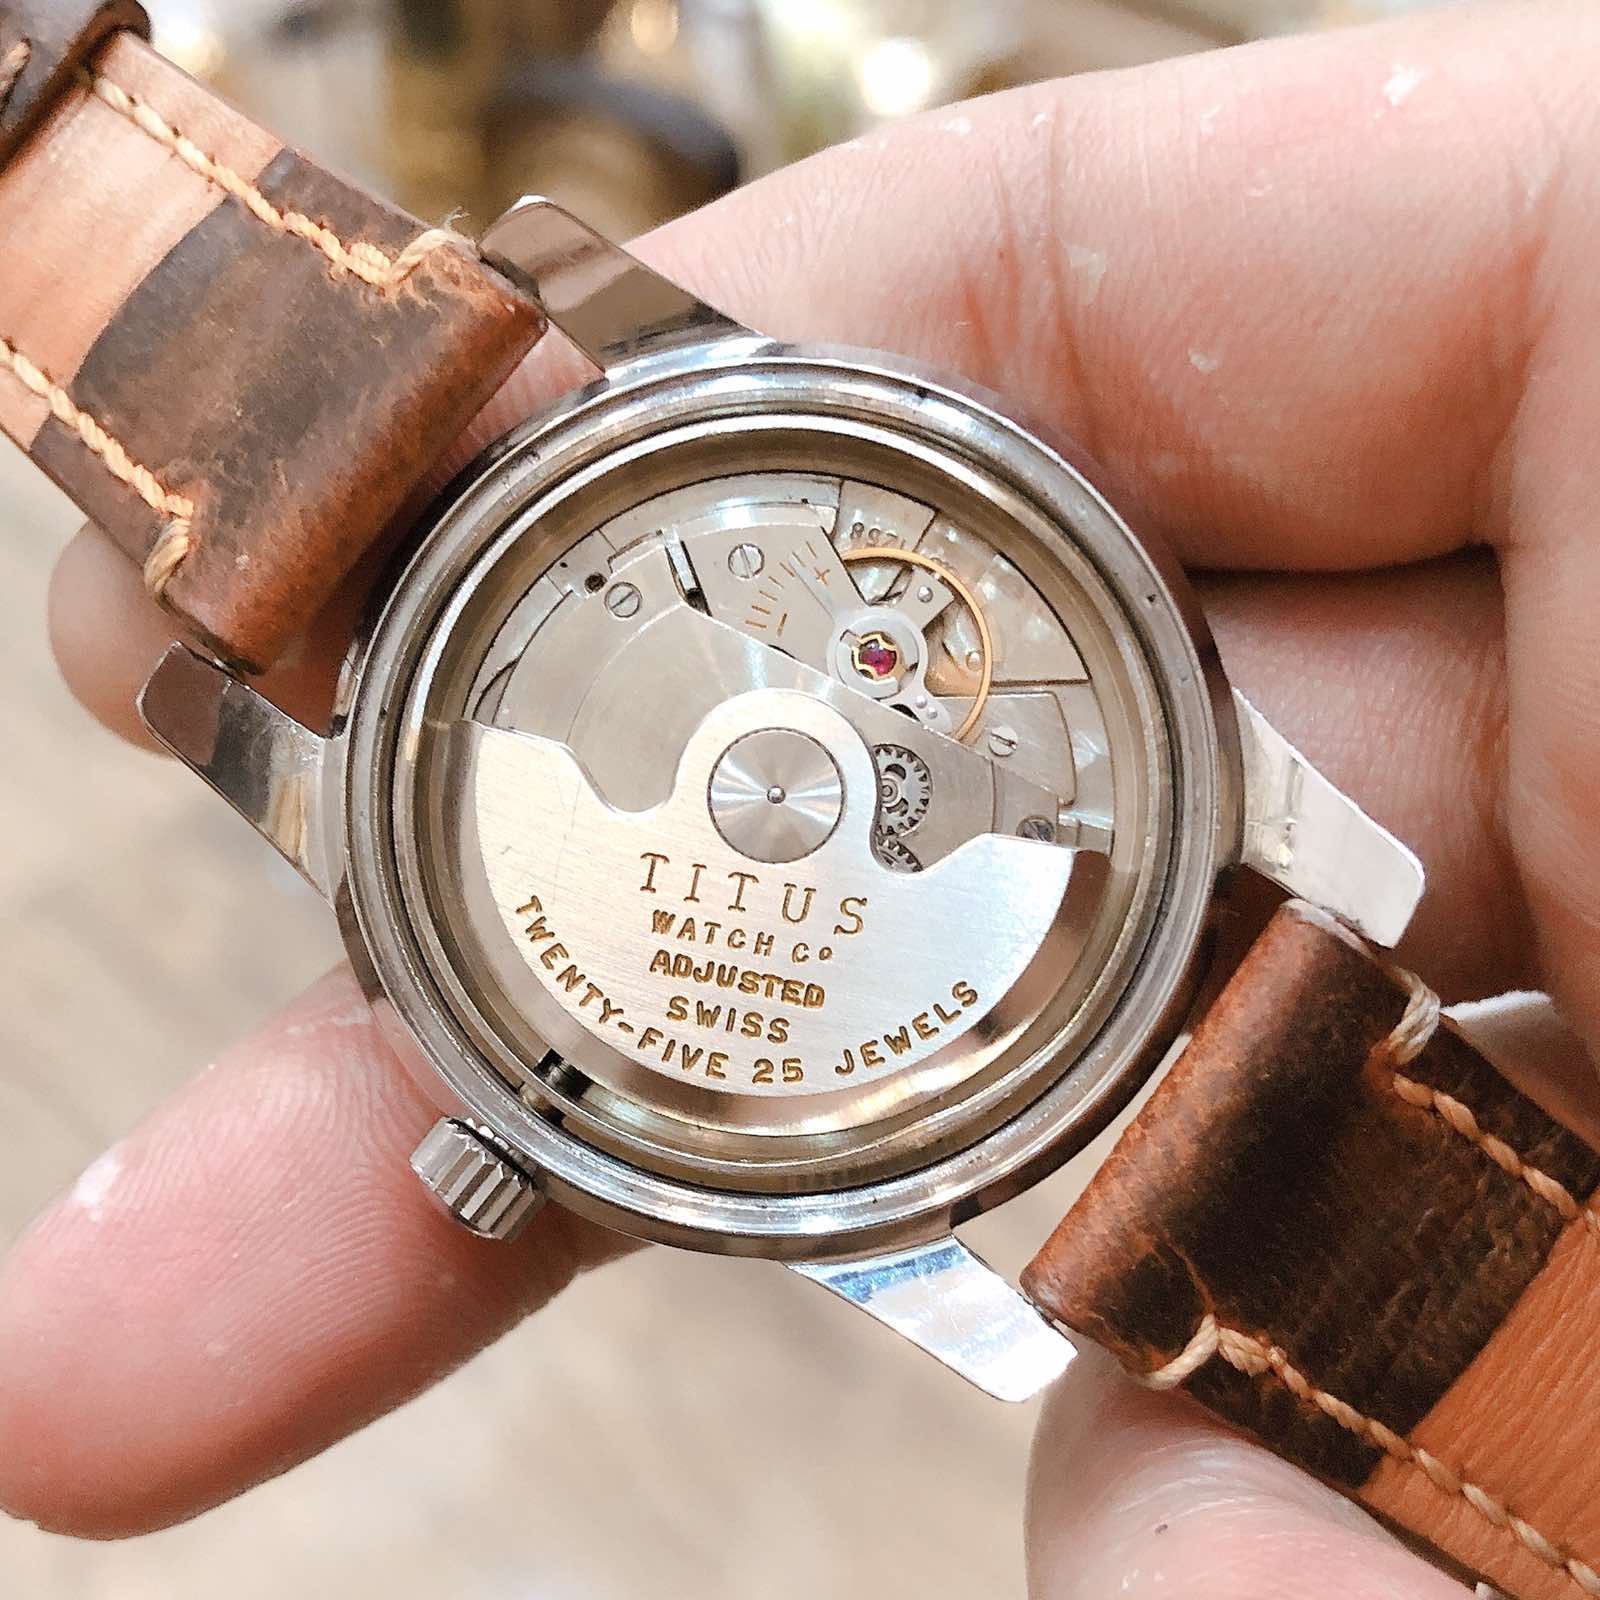 Đồng hồ Titus automatic dòng hoàng gia Anh Quốc chính hãng